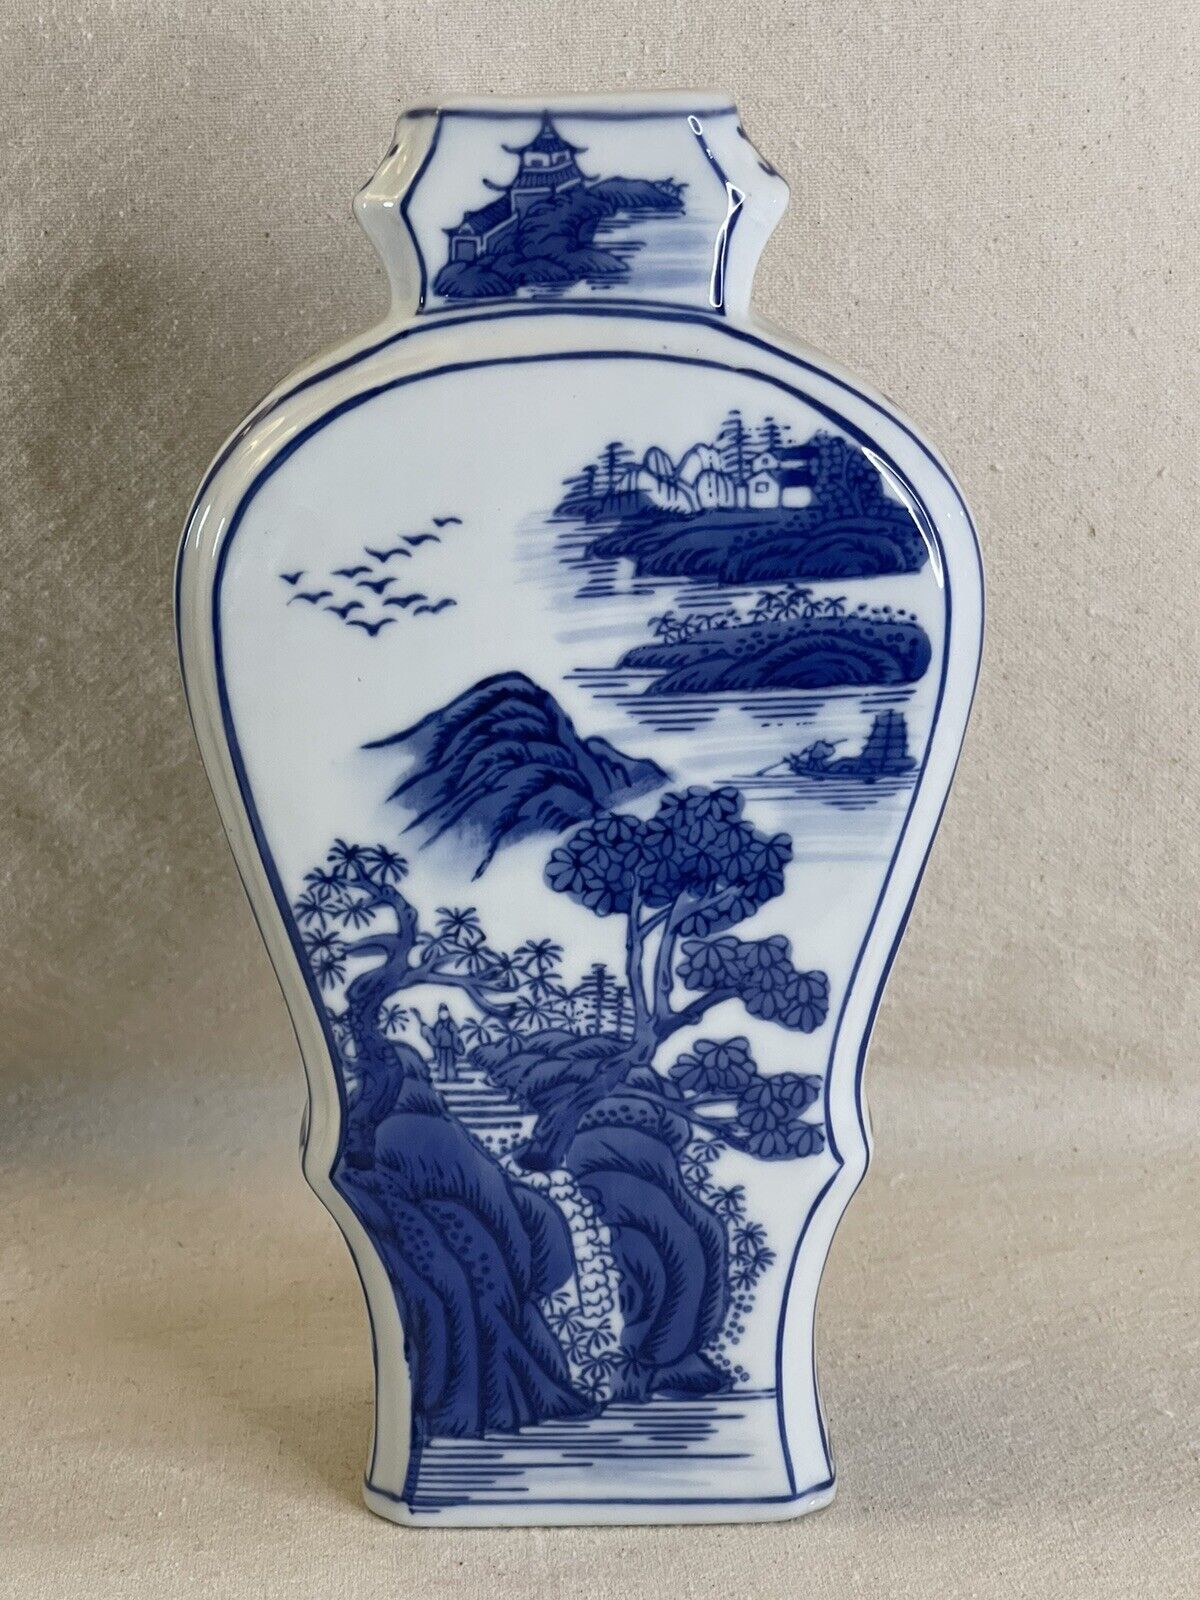 Unique Shaped Porcelain Chinese Asian Landscape Cobalt Blue White Vase Decor 10”